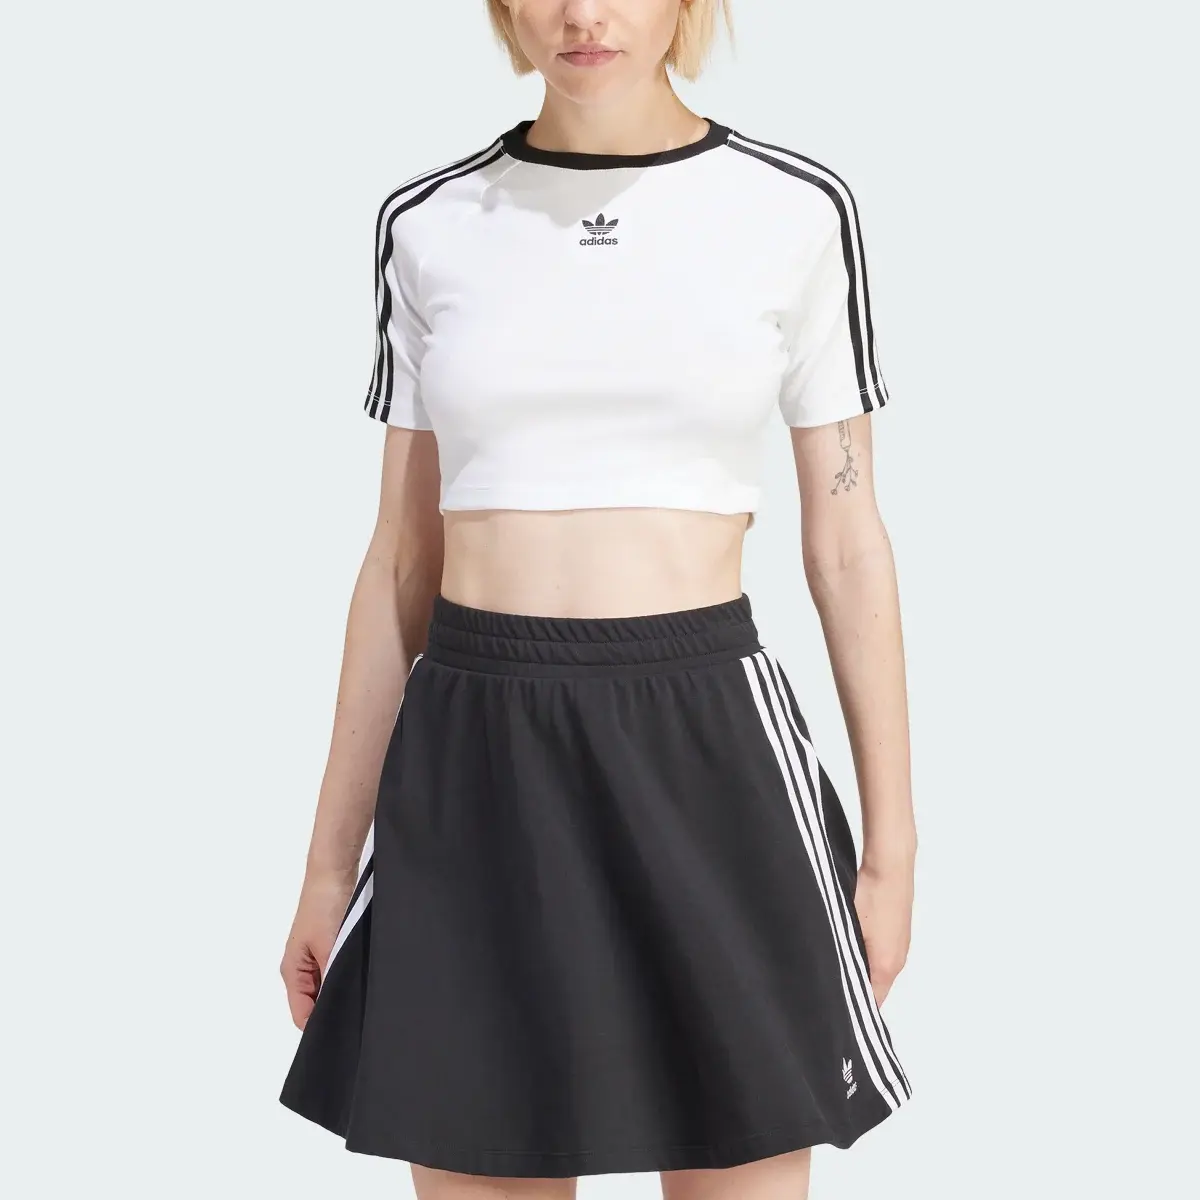 Adidas T-shirt 3-Stripes. 1